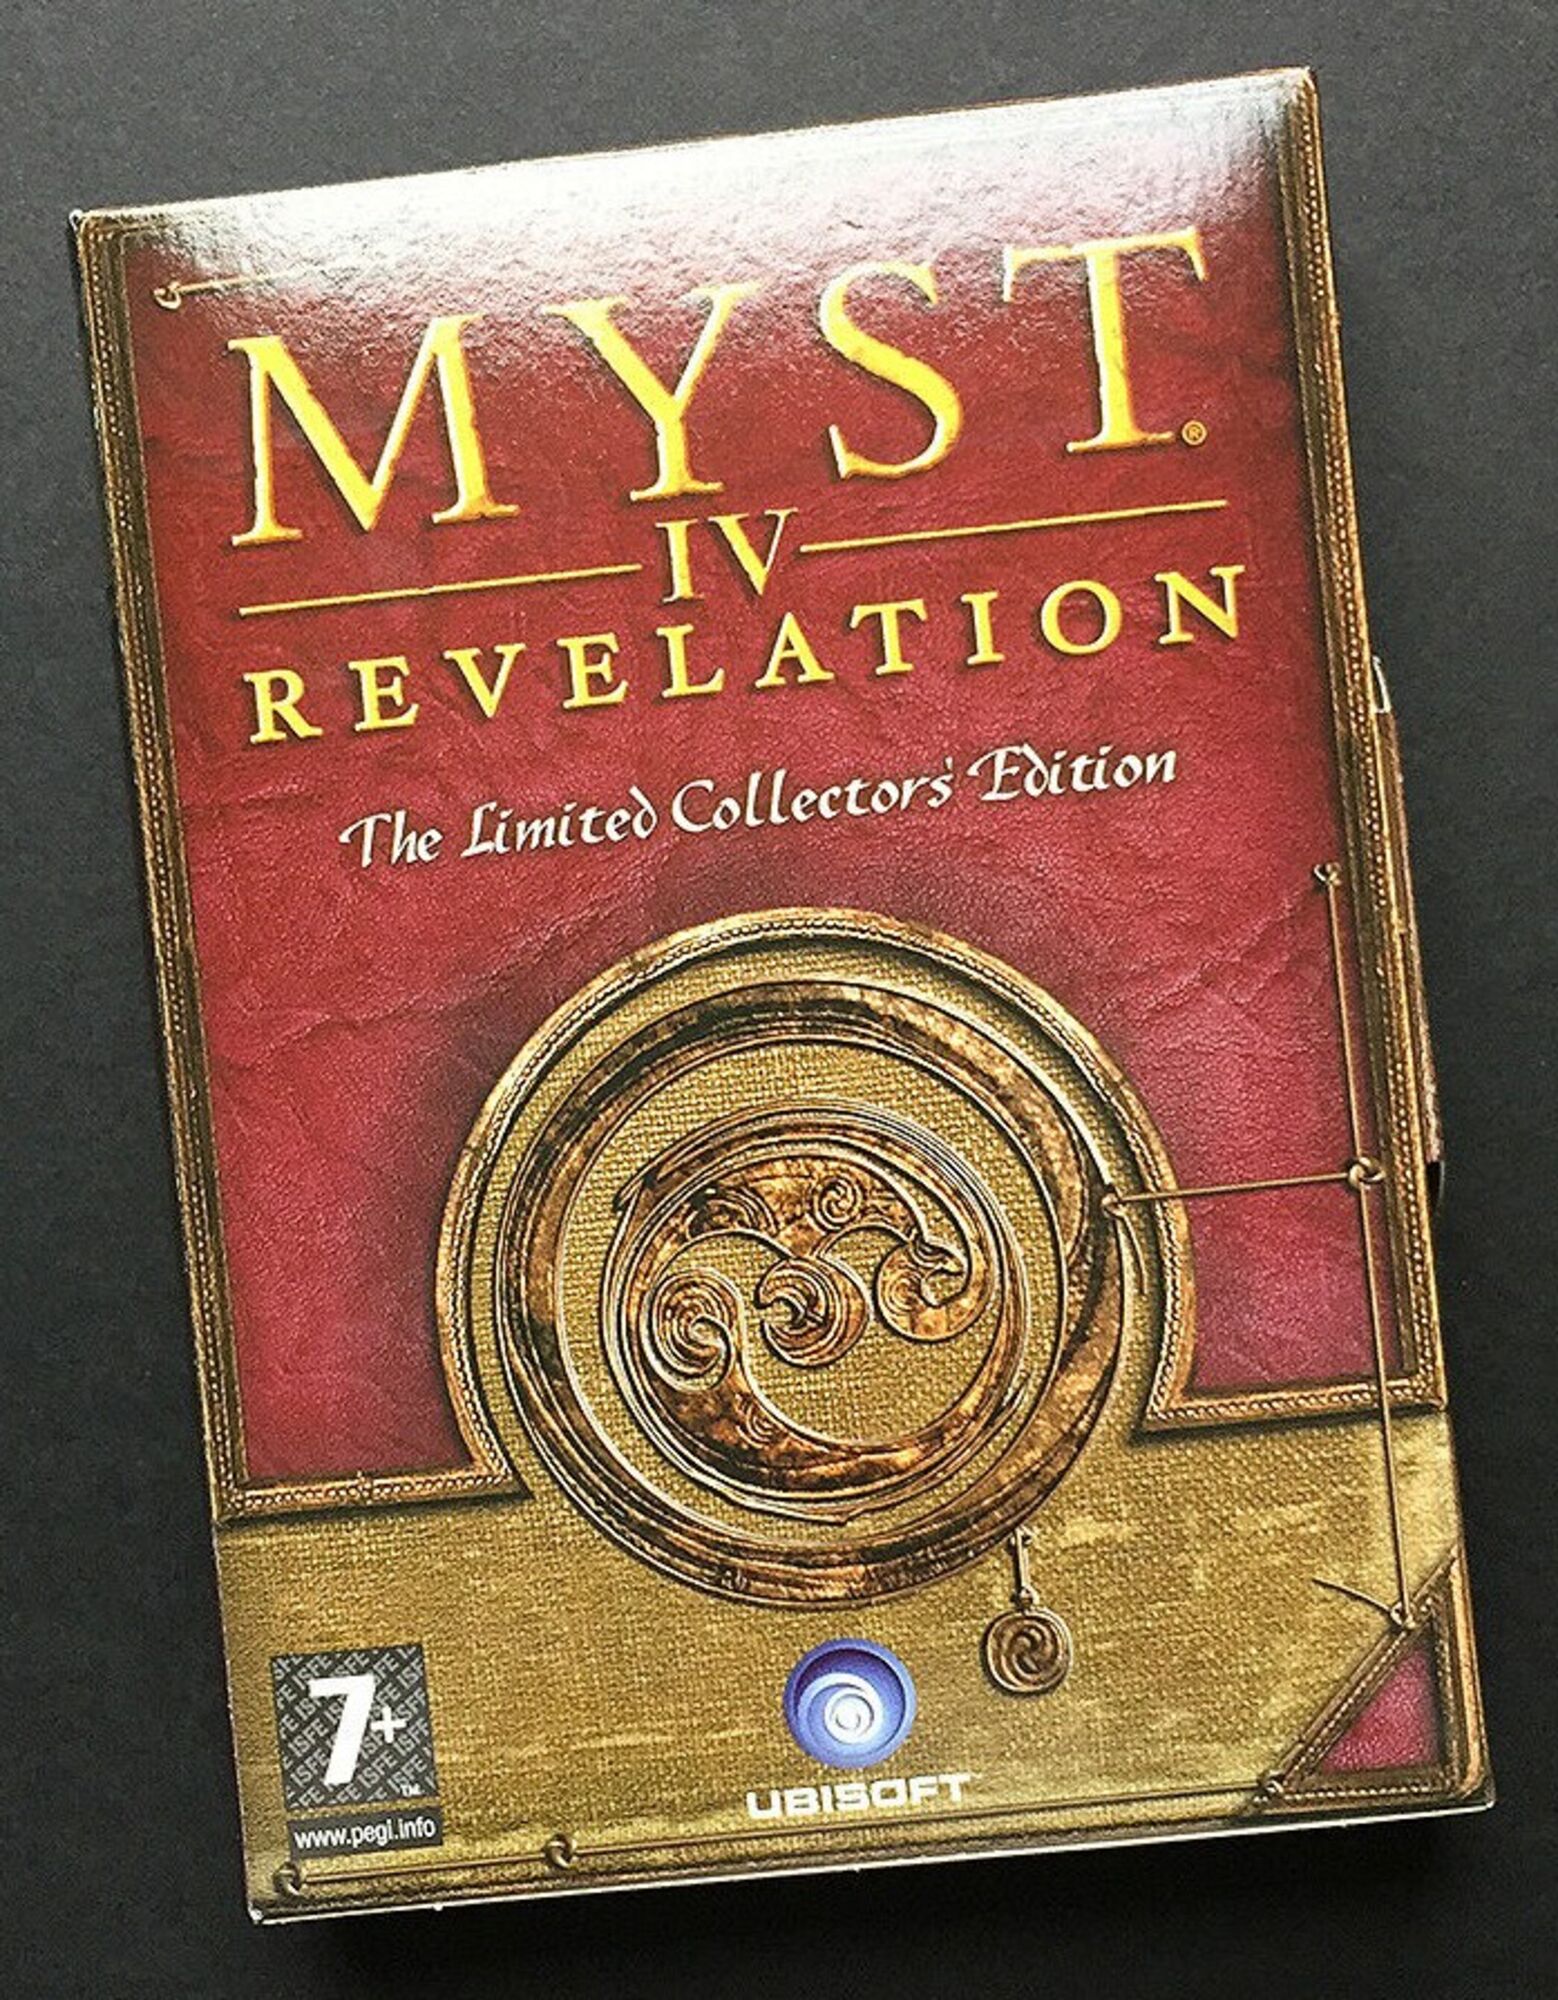 myst iv revelation patches